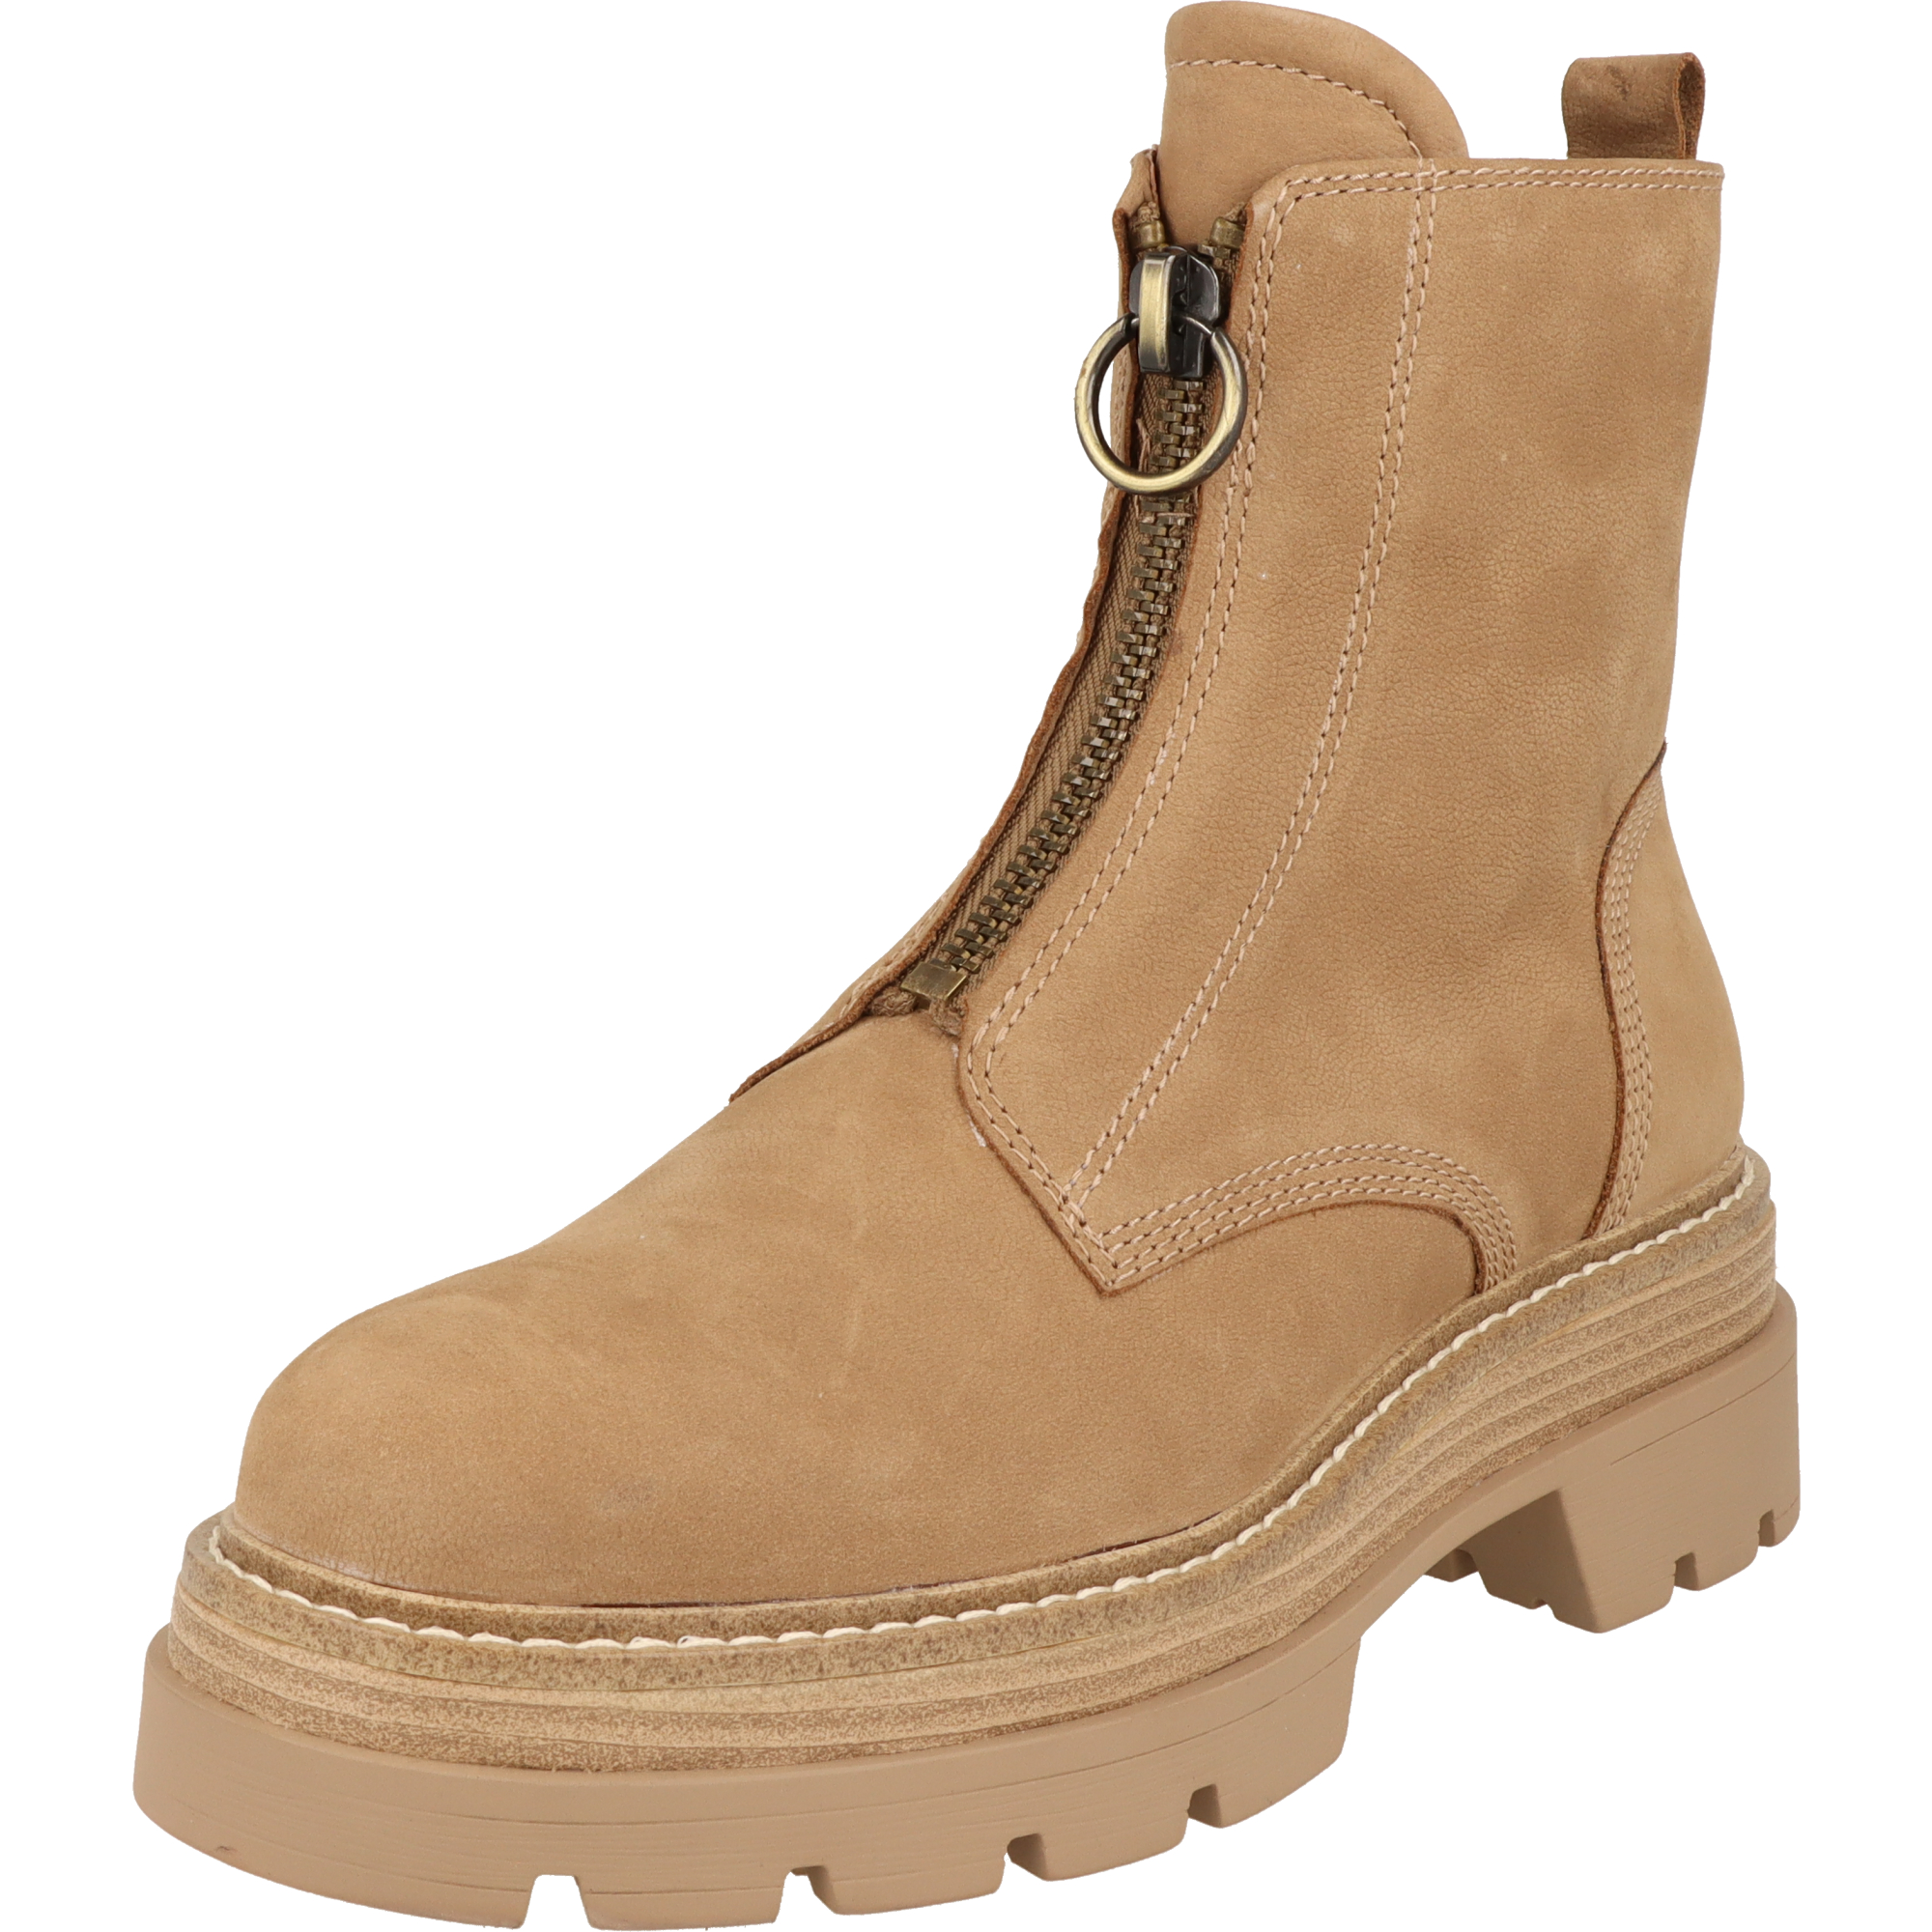 Tamaris Damen Schuhe Leder Boots Stiefel Reißverschluss 1-25413-41 310 Camel